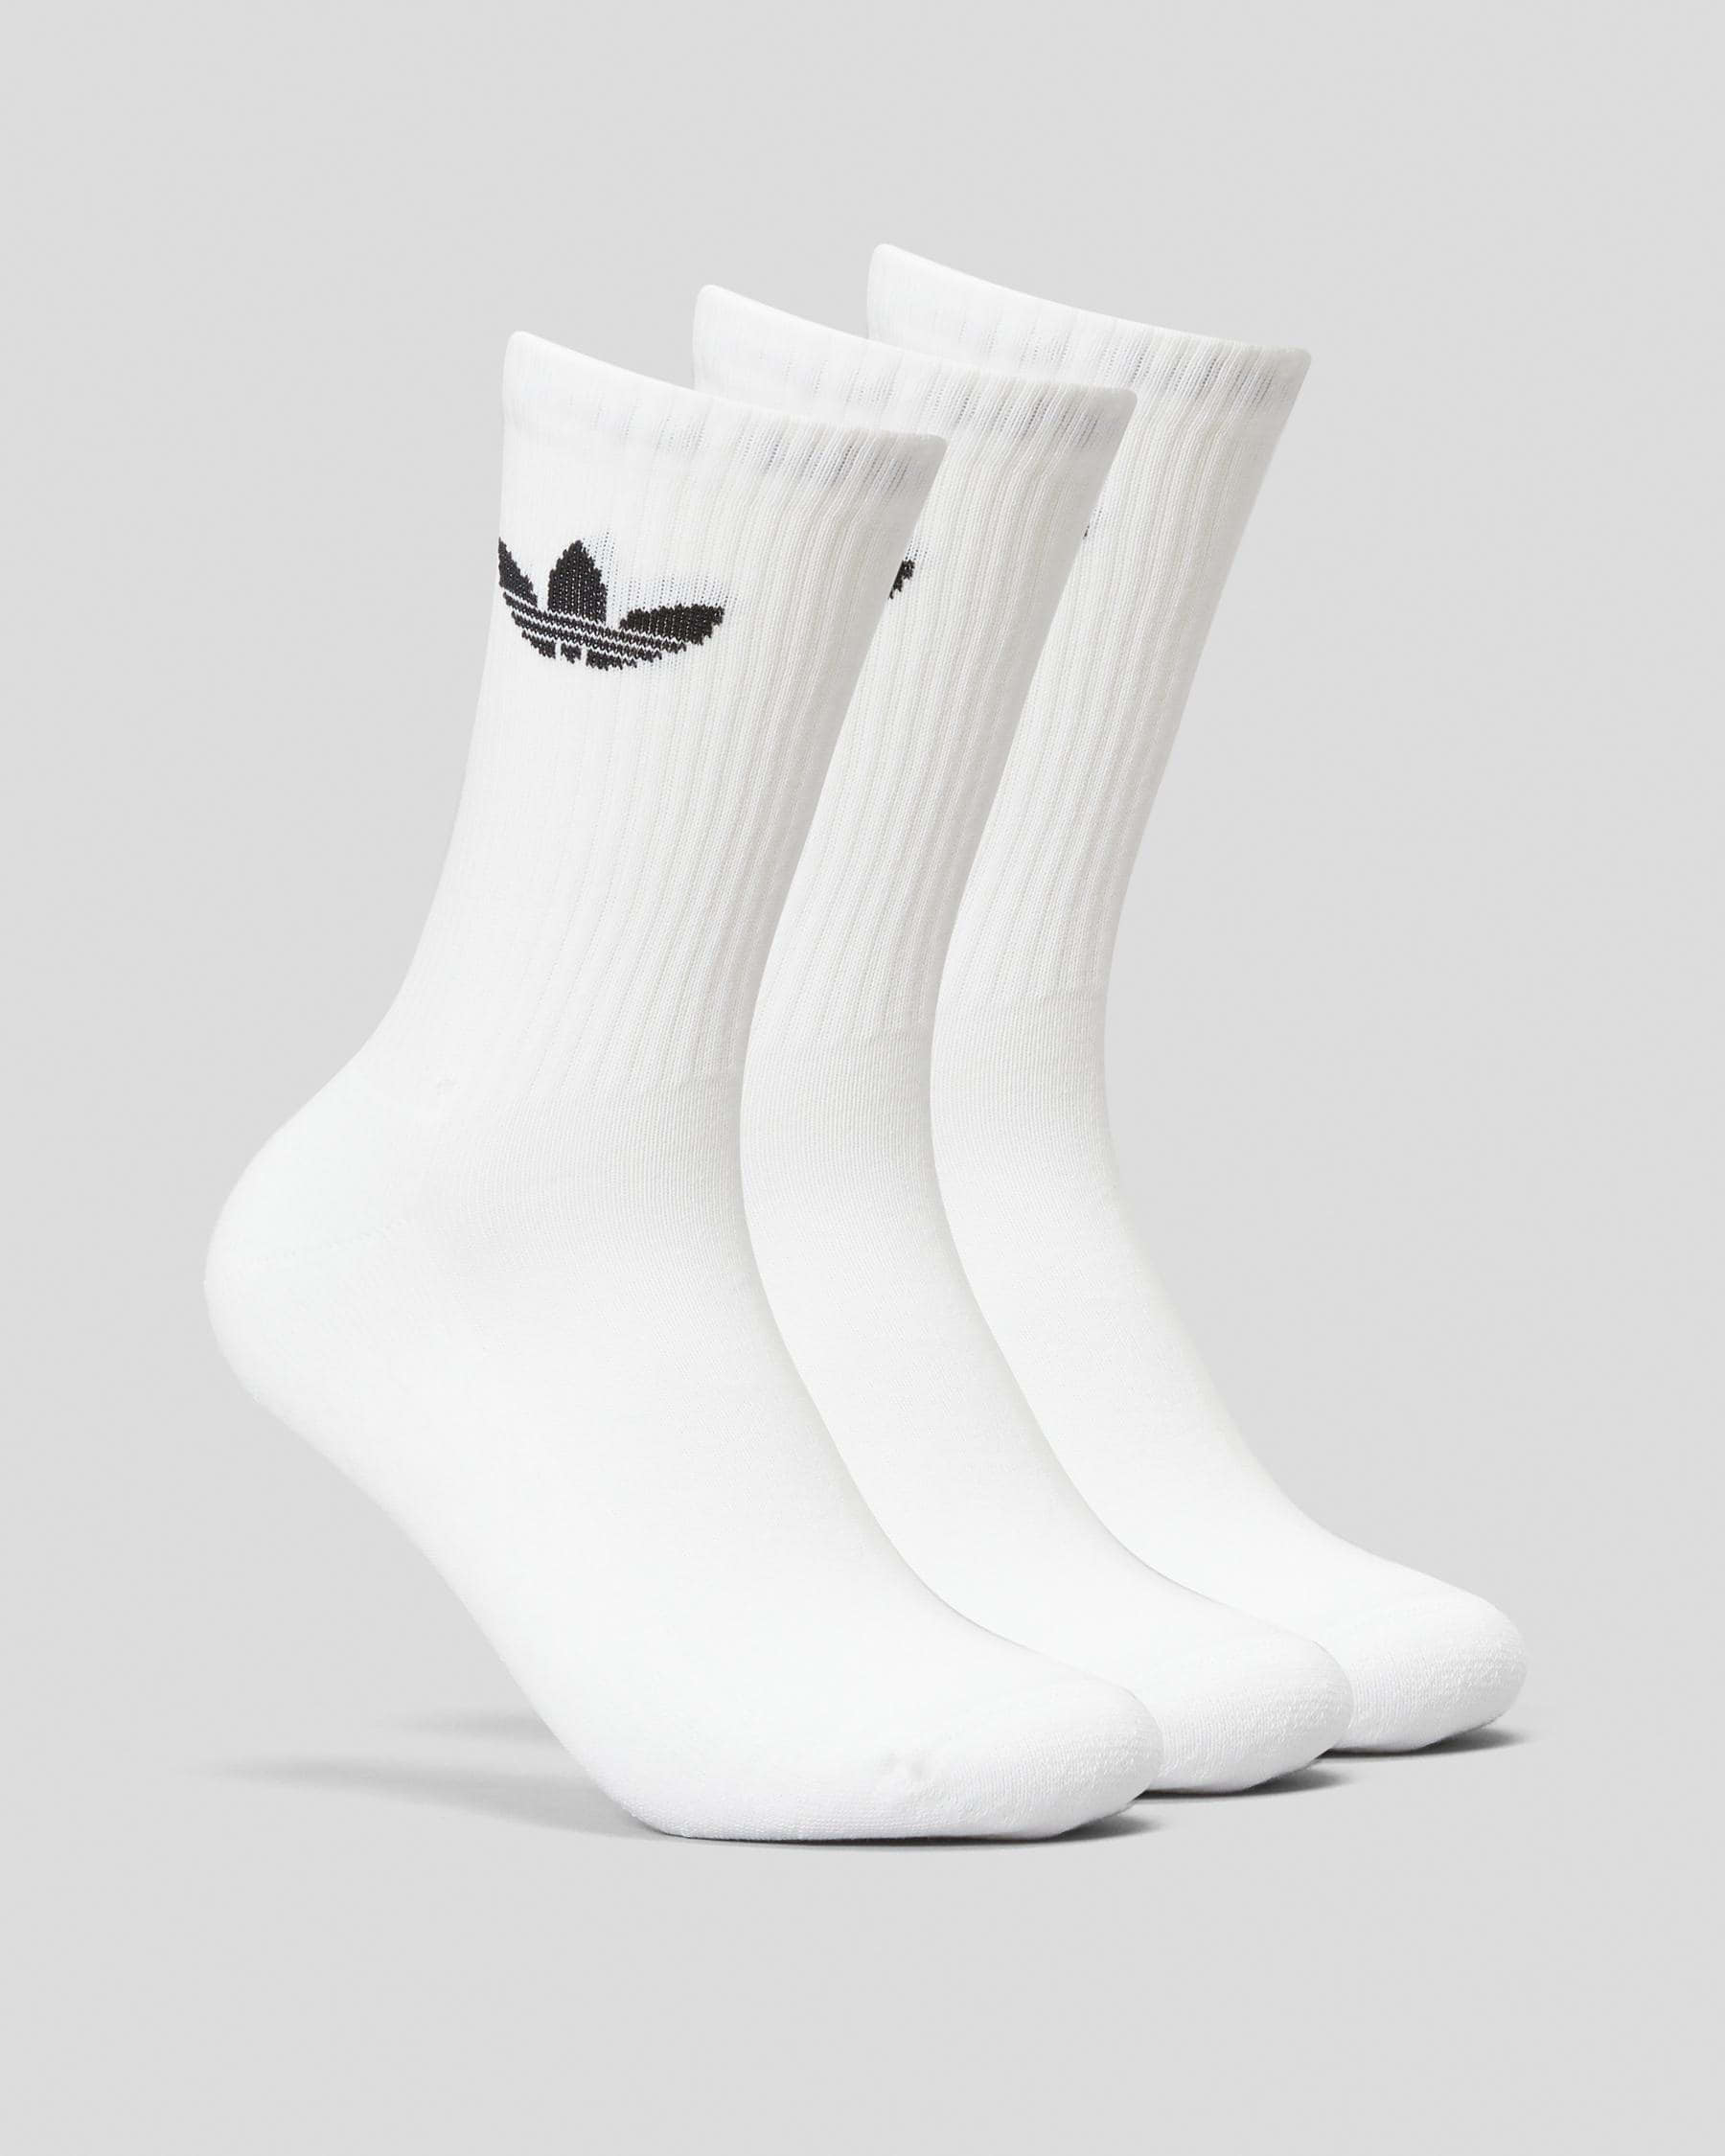 Adidas Trefoil Crew Sock 3 Pack In White - Fast Shipping & Easy Returns ...